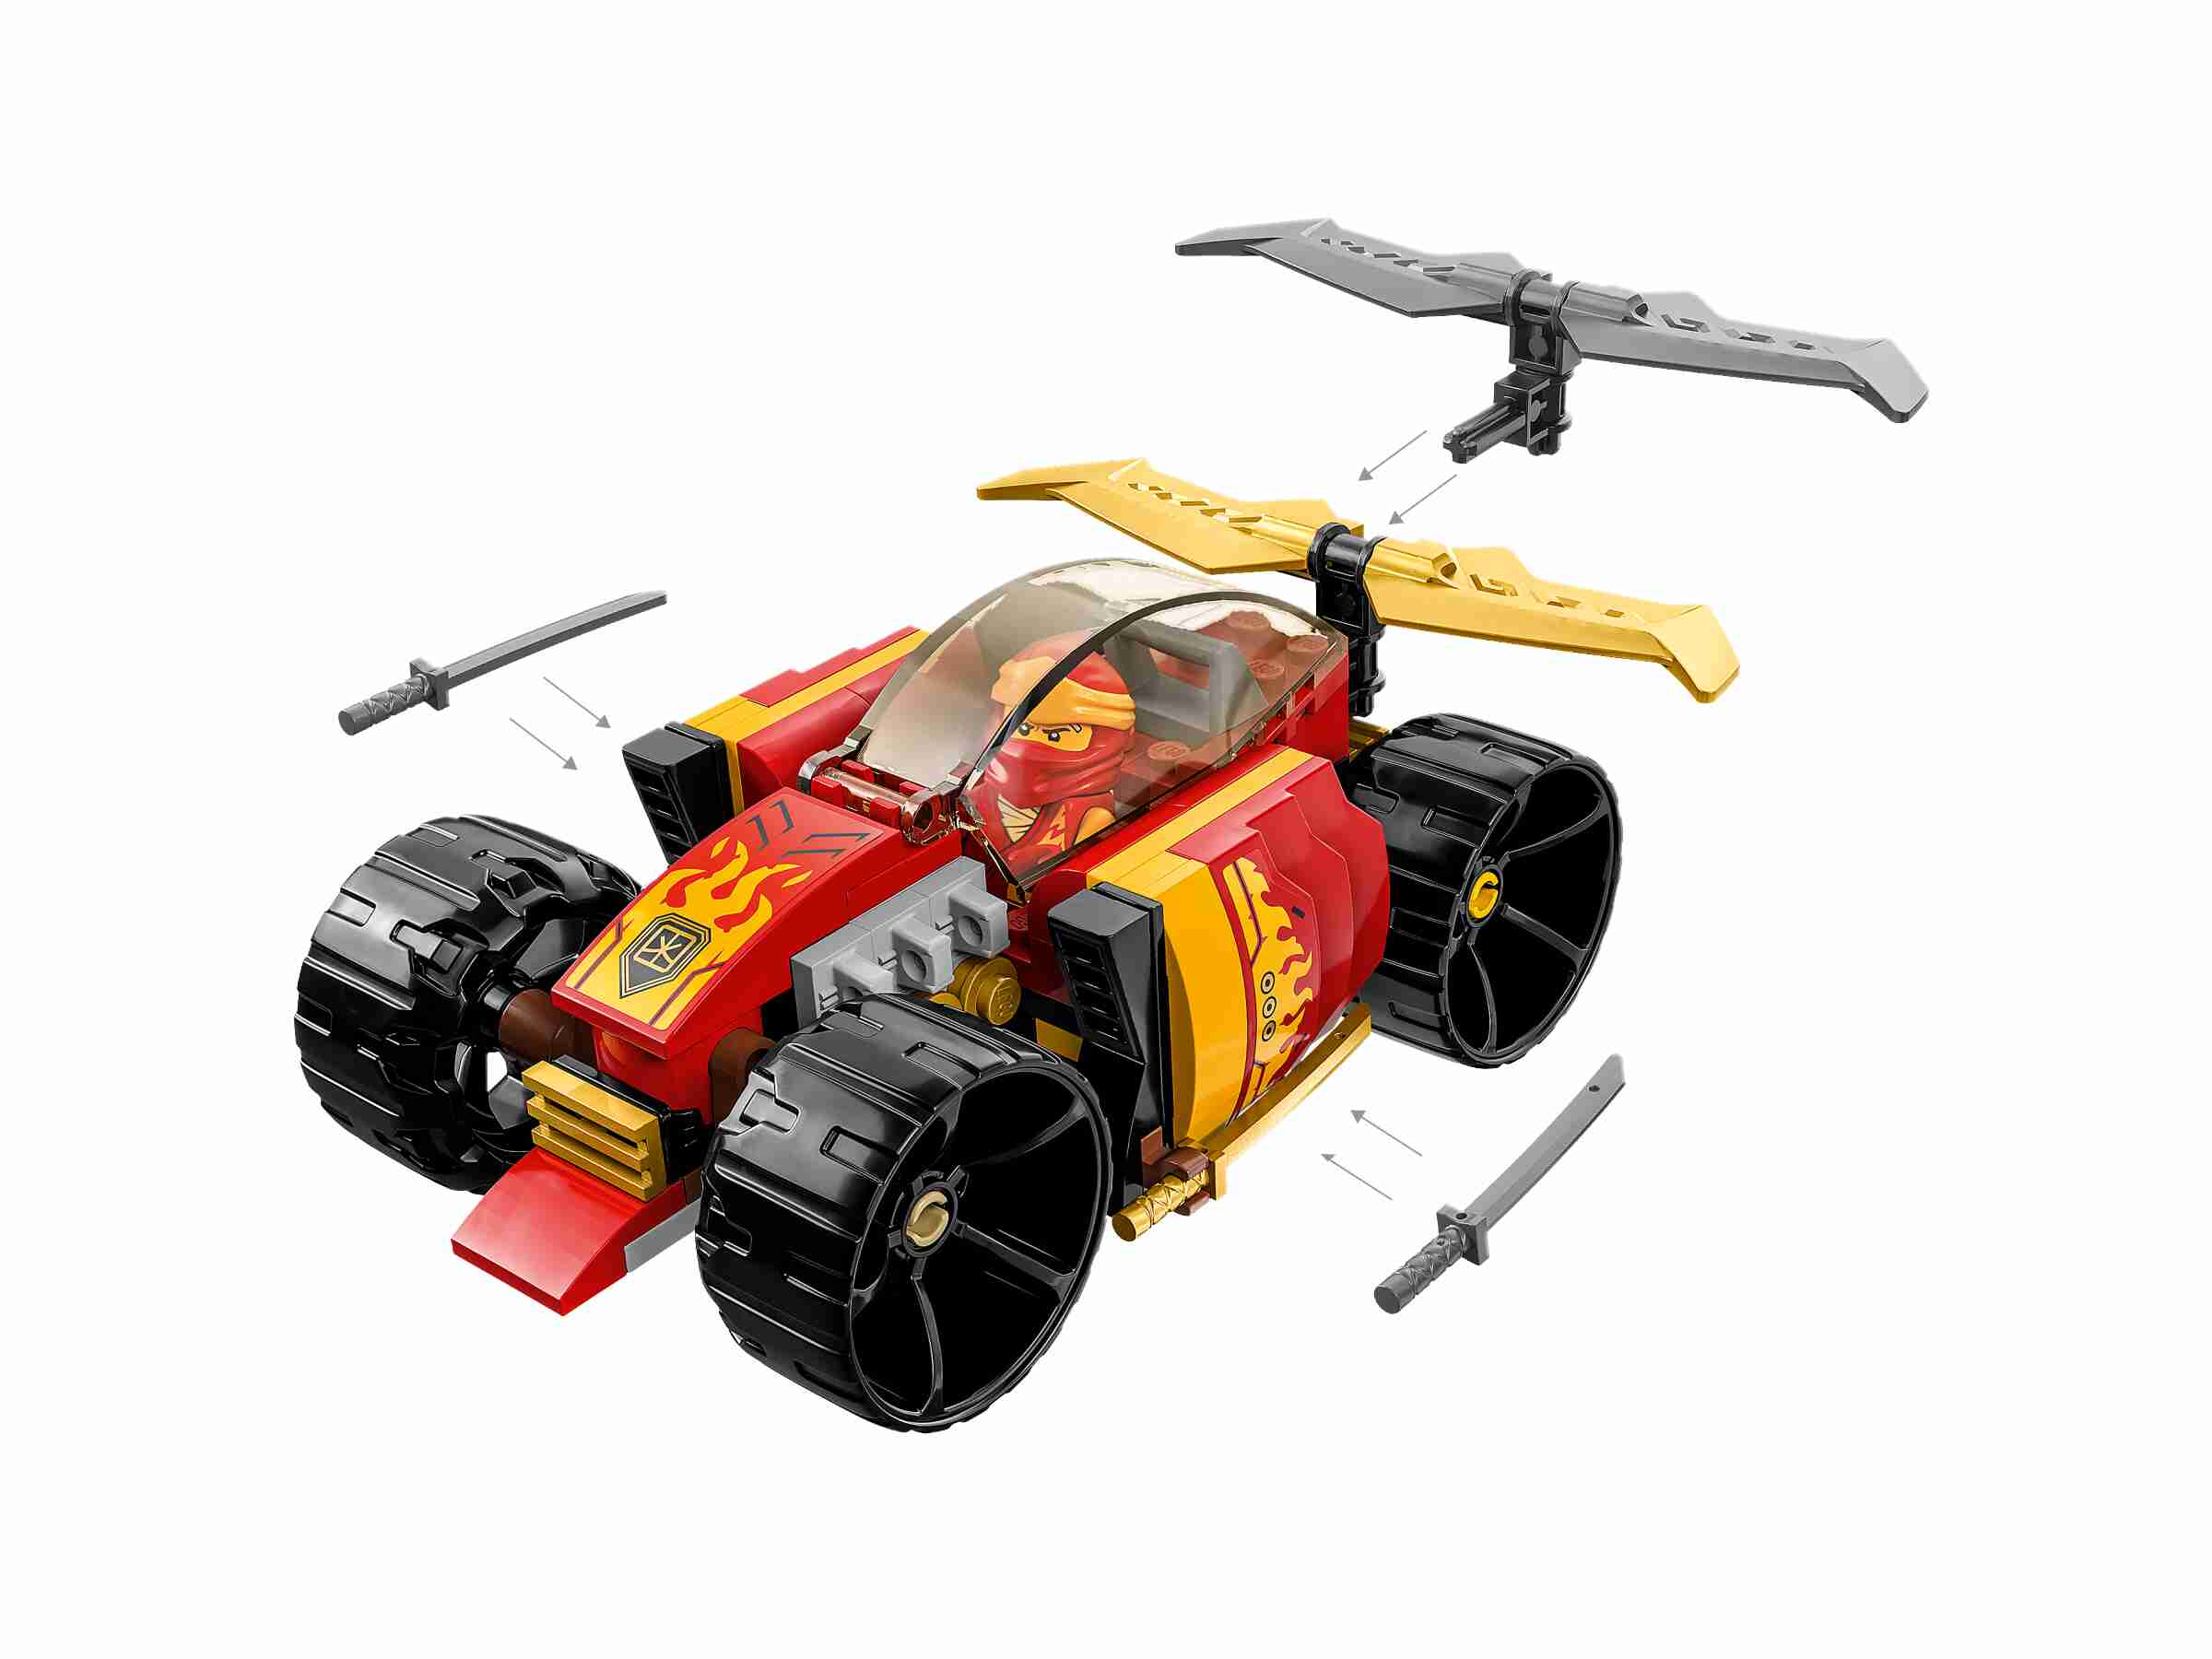 LEGO 71780 NINJAGO Kais Ninja-Rennwagen EVO, Minifigur Kai, 2 goldene Katanas